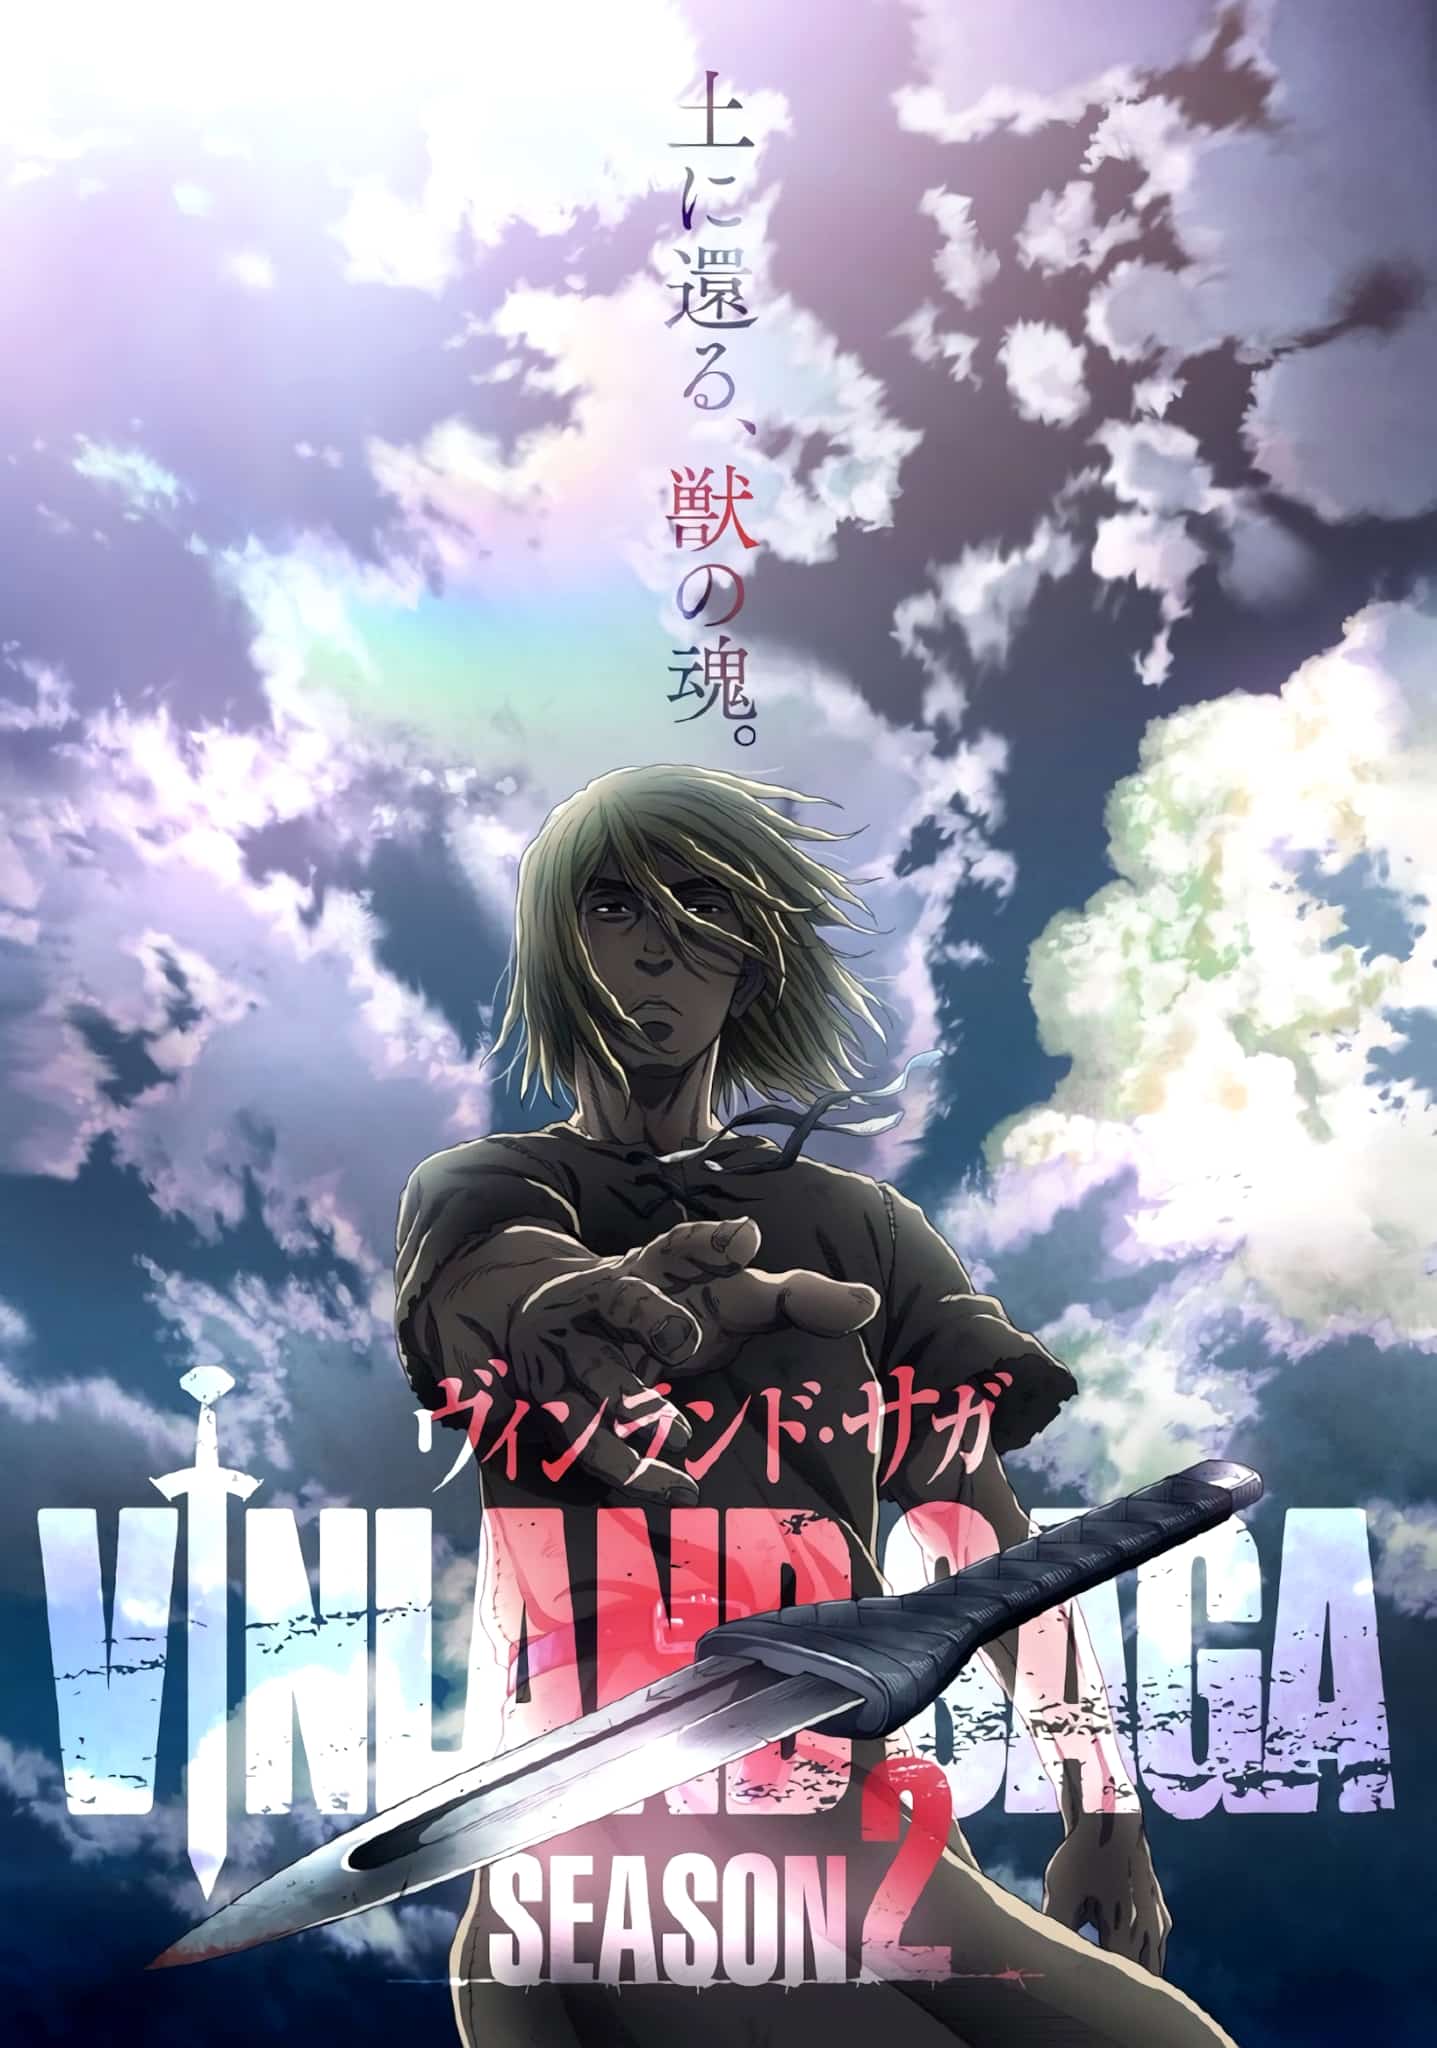 Annonce de anime Vinland Saga Saison 2